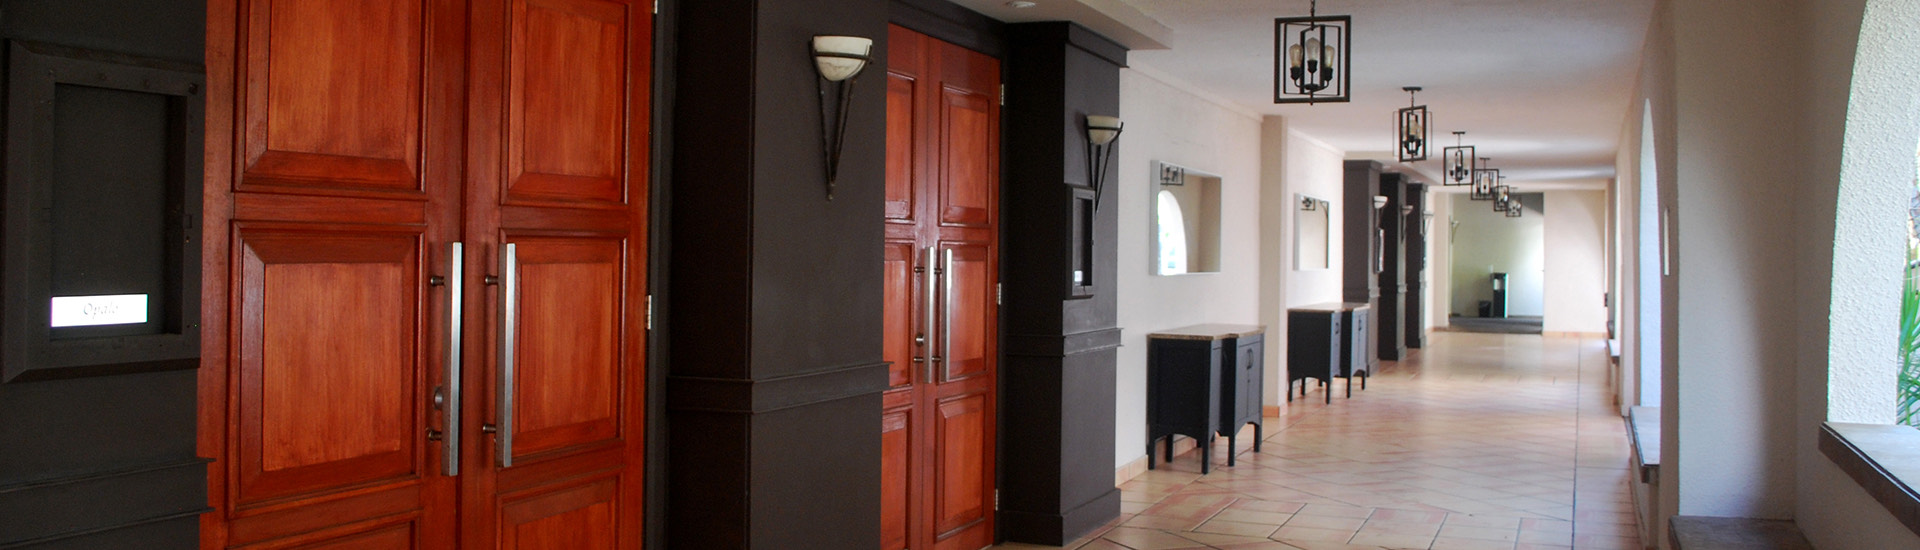 hallway with large mahogany doors